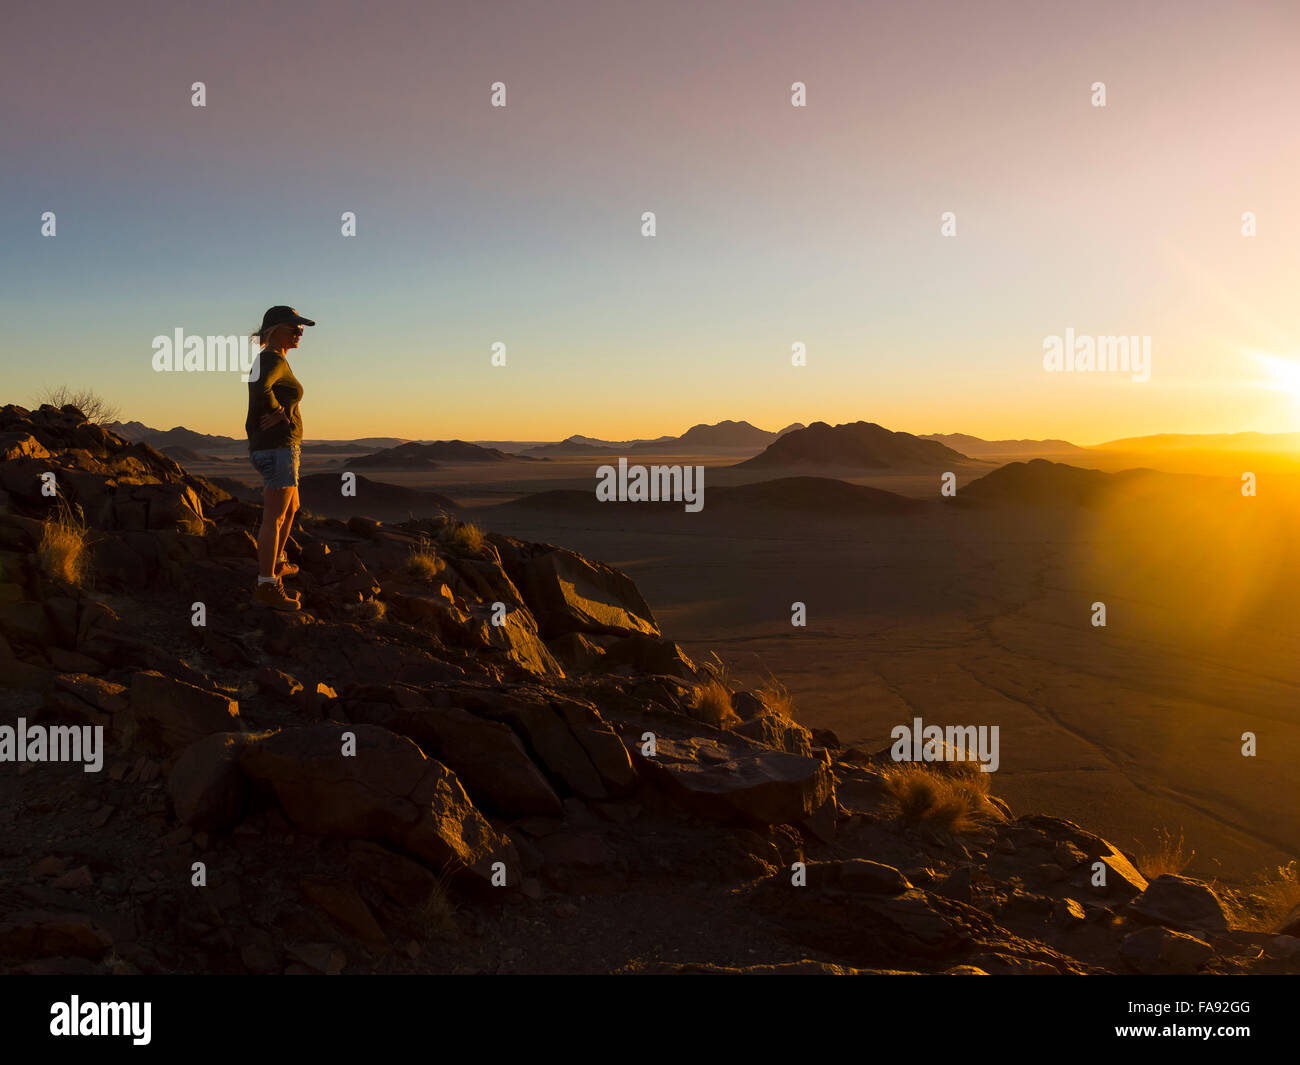 Woman at sunset overlooking Tsaris Mountains, Hardap Region, Namibia Stock Photo